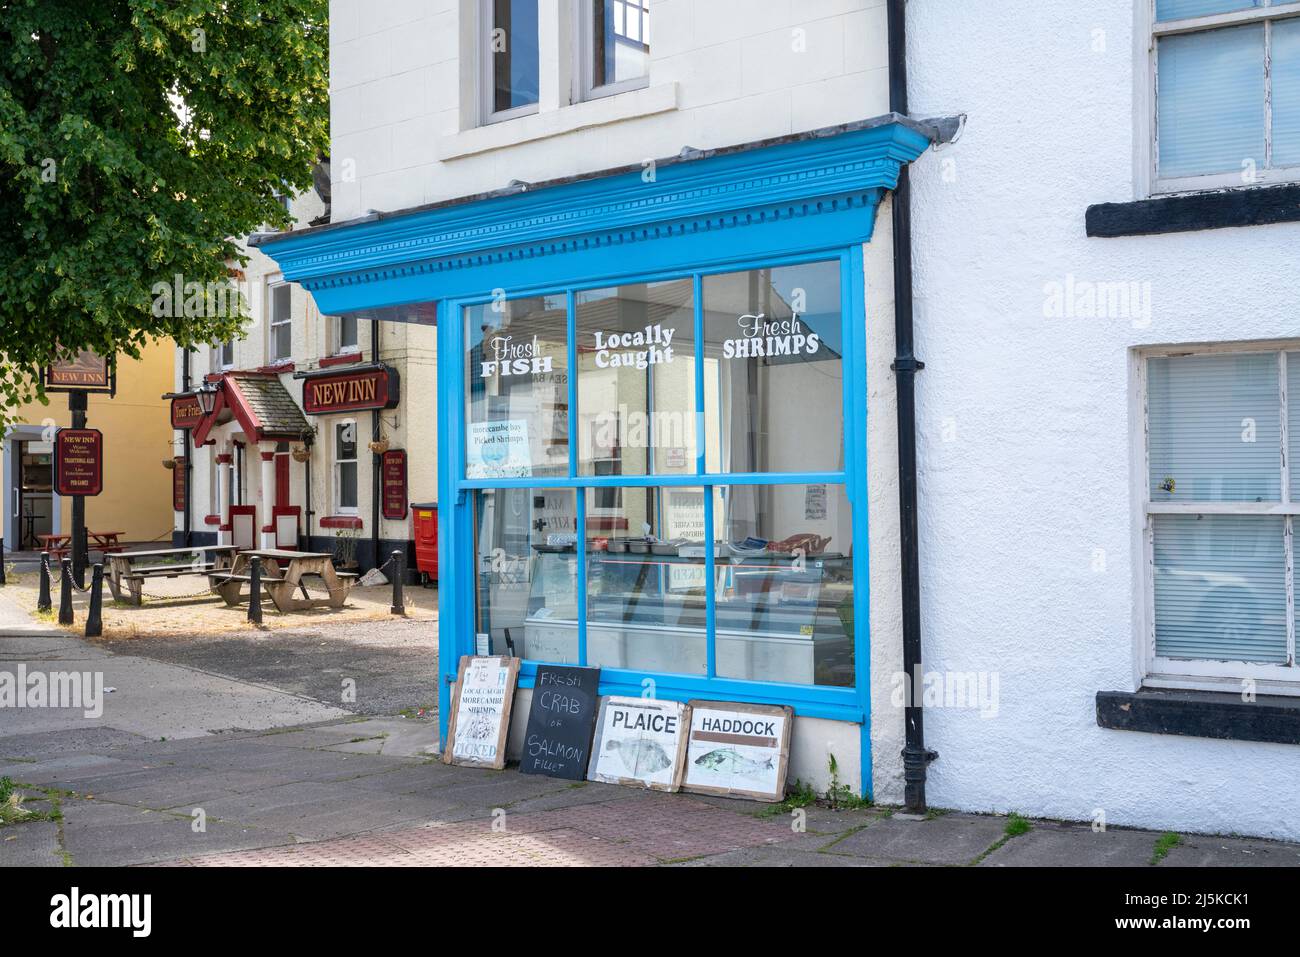 The Shrimp Shop, Poulton Square, Morecambe, Lancashire Stock Photo